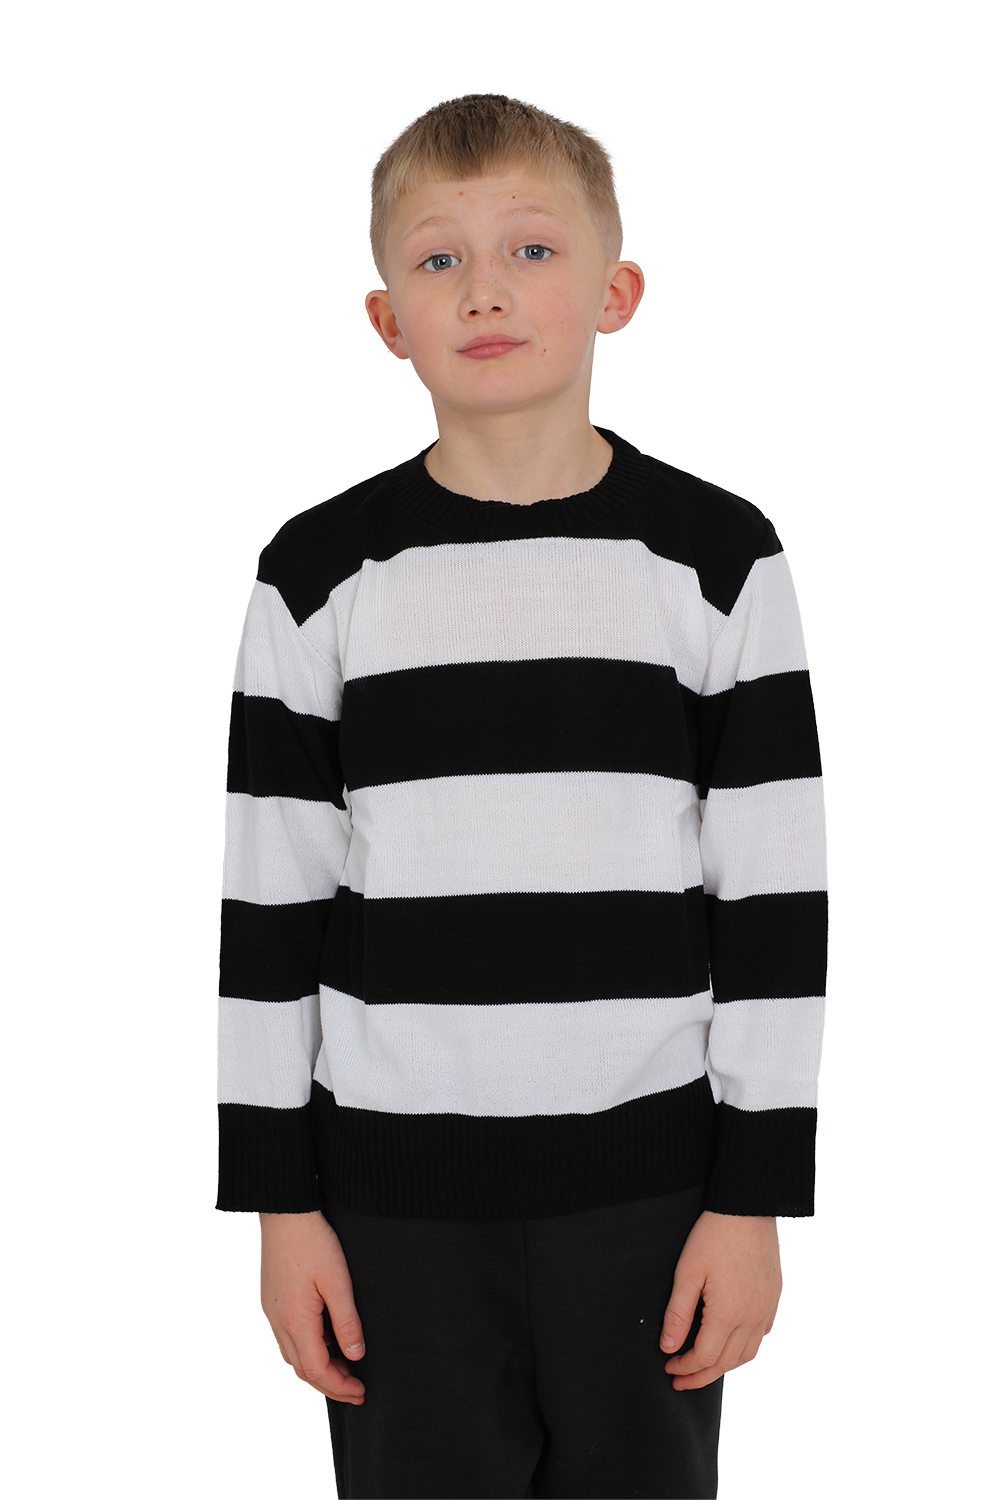 Wickedfun Children's Black and White Stripe/Convict Knitted Jumper